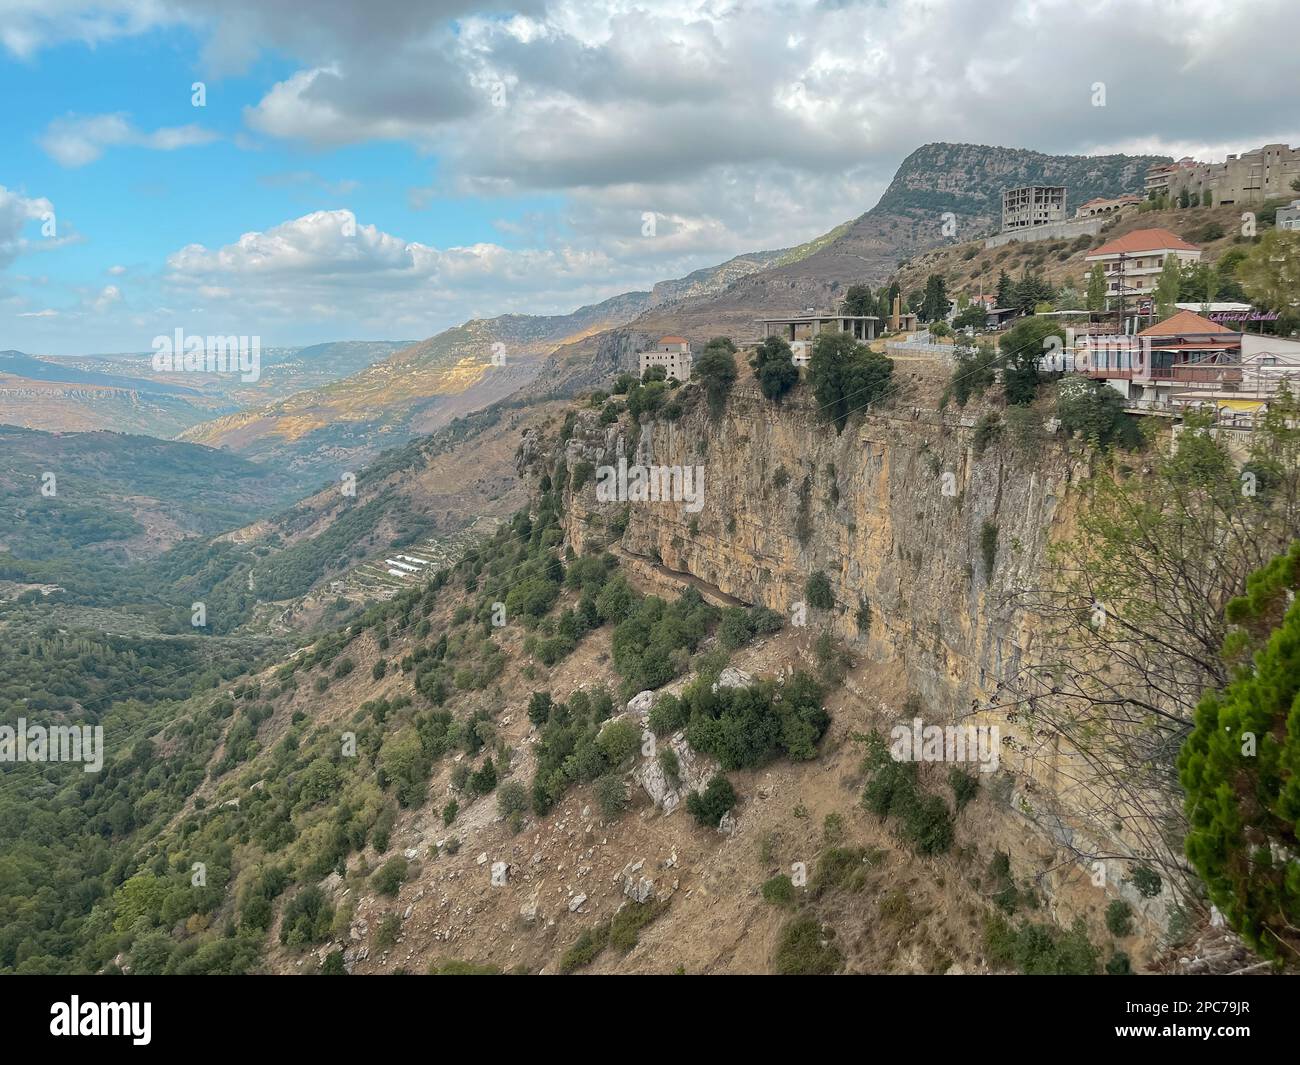 Vista de la montaña y la naturaleza - Vista aérea de la ciudad de Jezzine en Líbano, a una altitud de 1000m, rodeado de picos de montaña y bosques de pinos - Sur Foto de stock